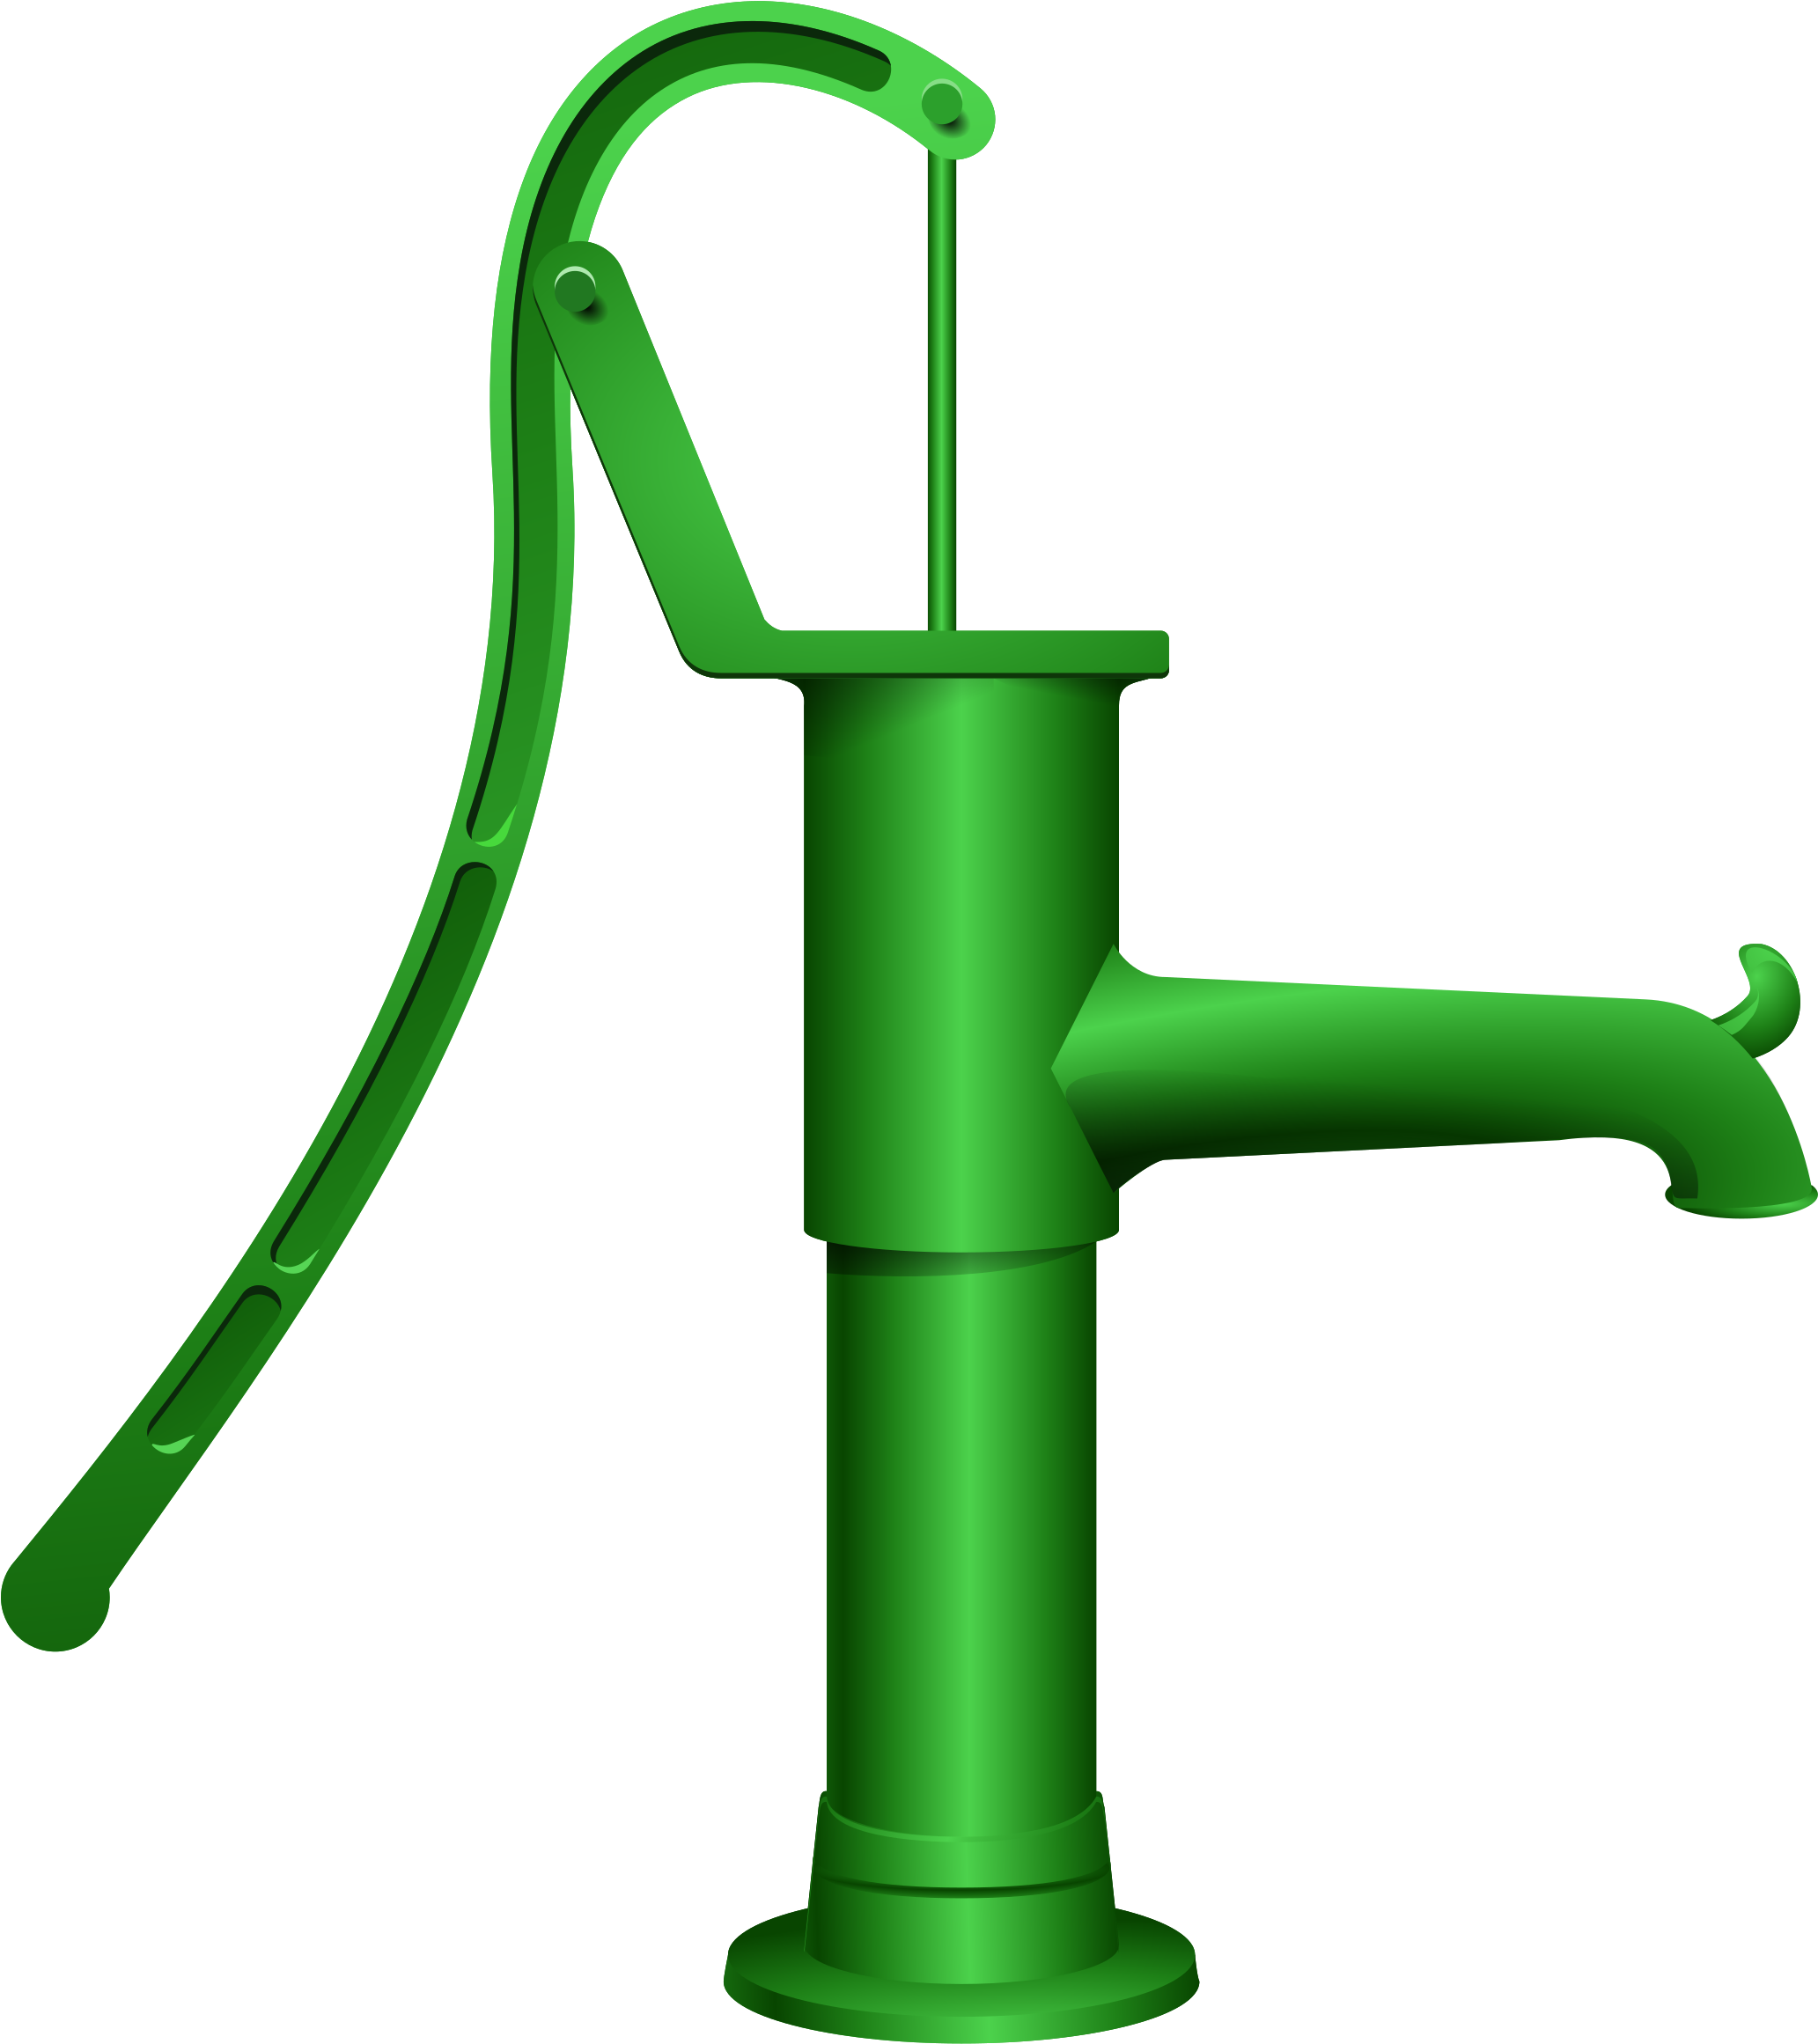 Submersible Pump Hand Pump Water Well Clip Art - Submersible Pump Hand Pump...